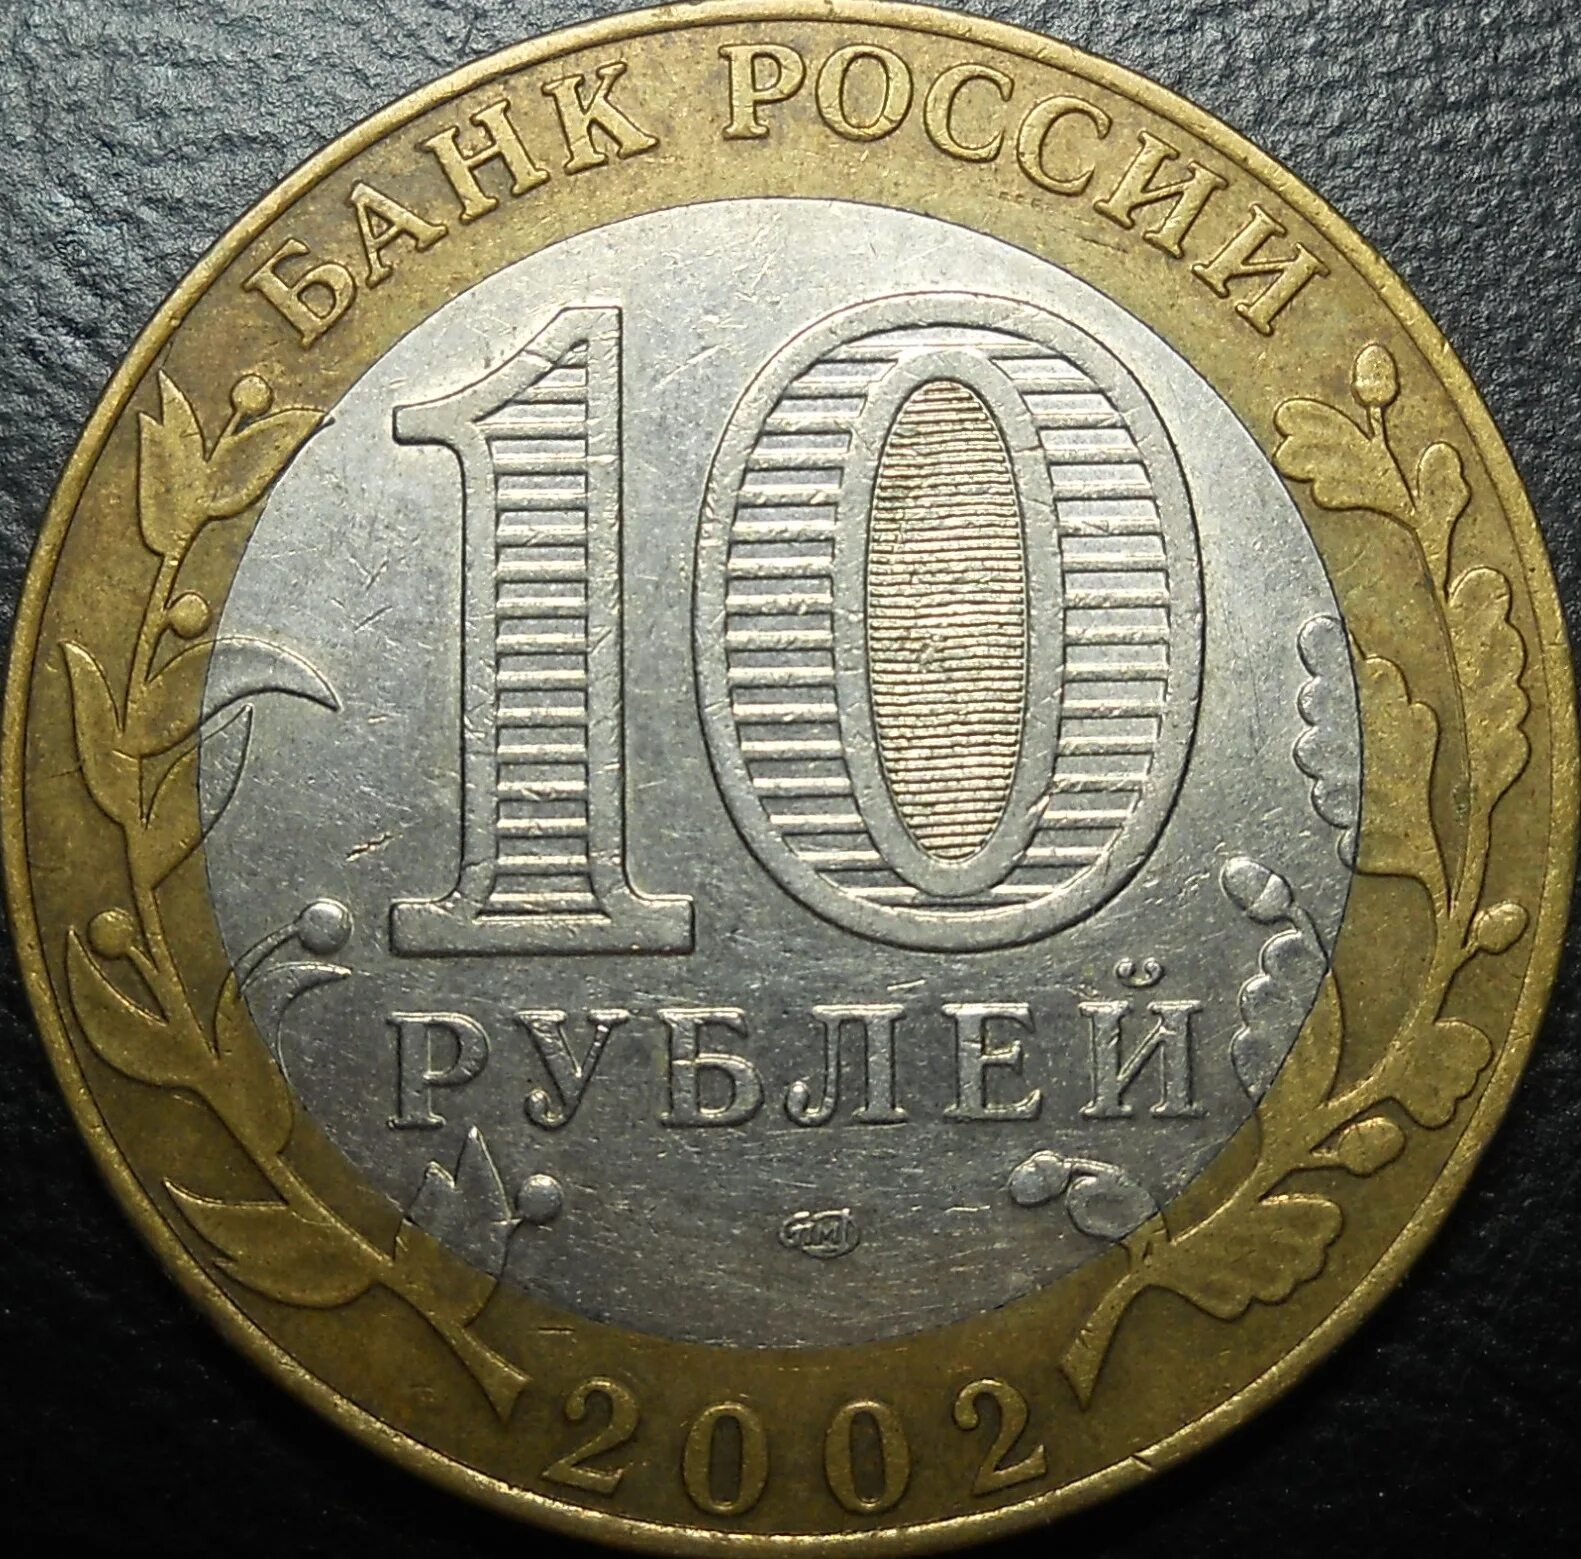 80 рублей 85. 85 Рублей. 10 Рублей Белгородская область выкус. 2009 Выкус.